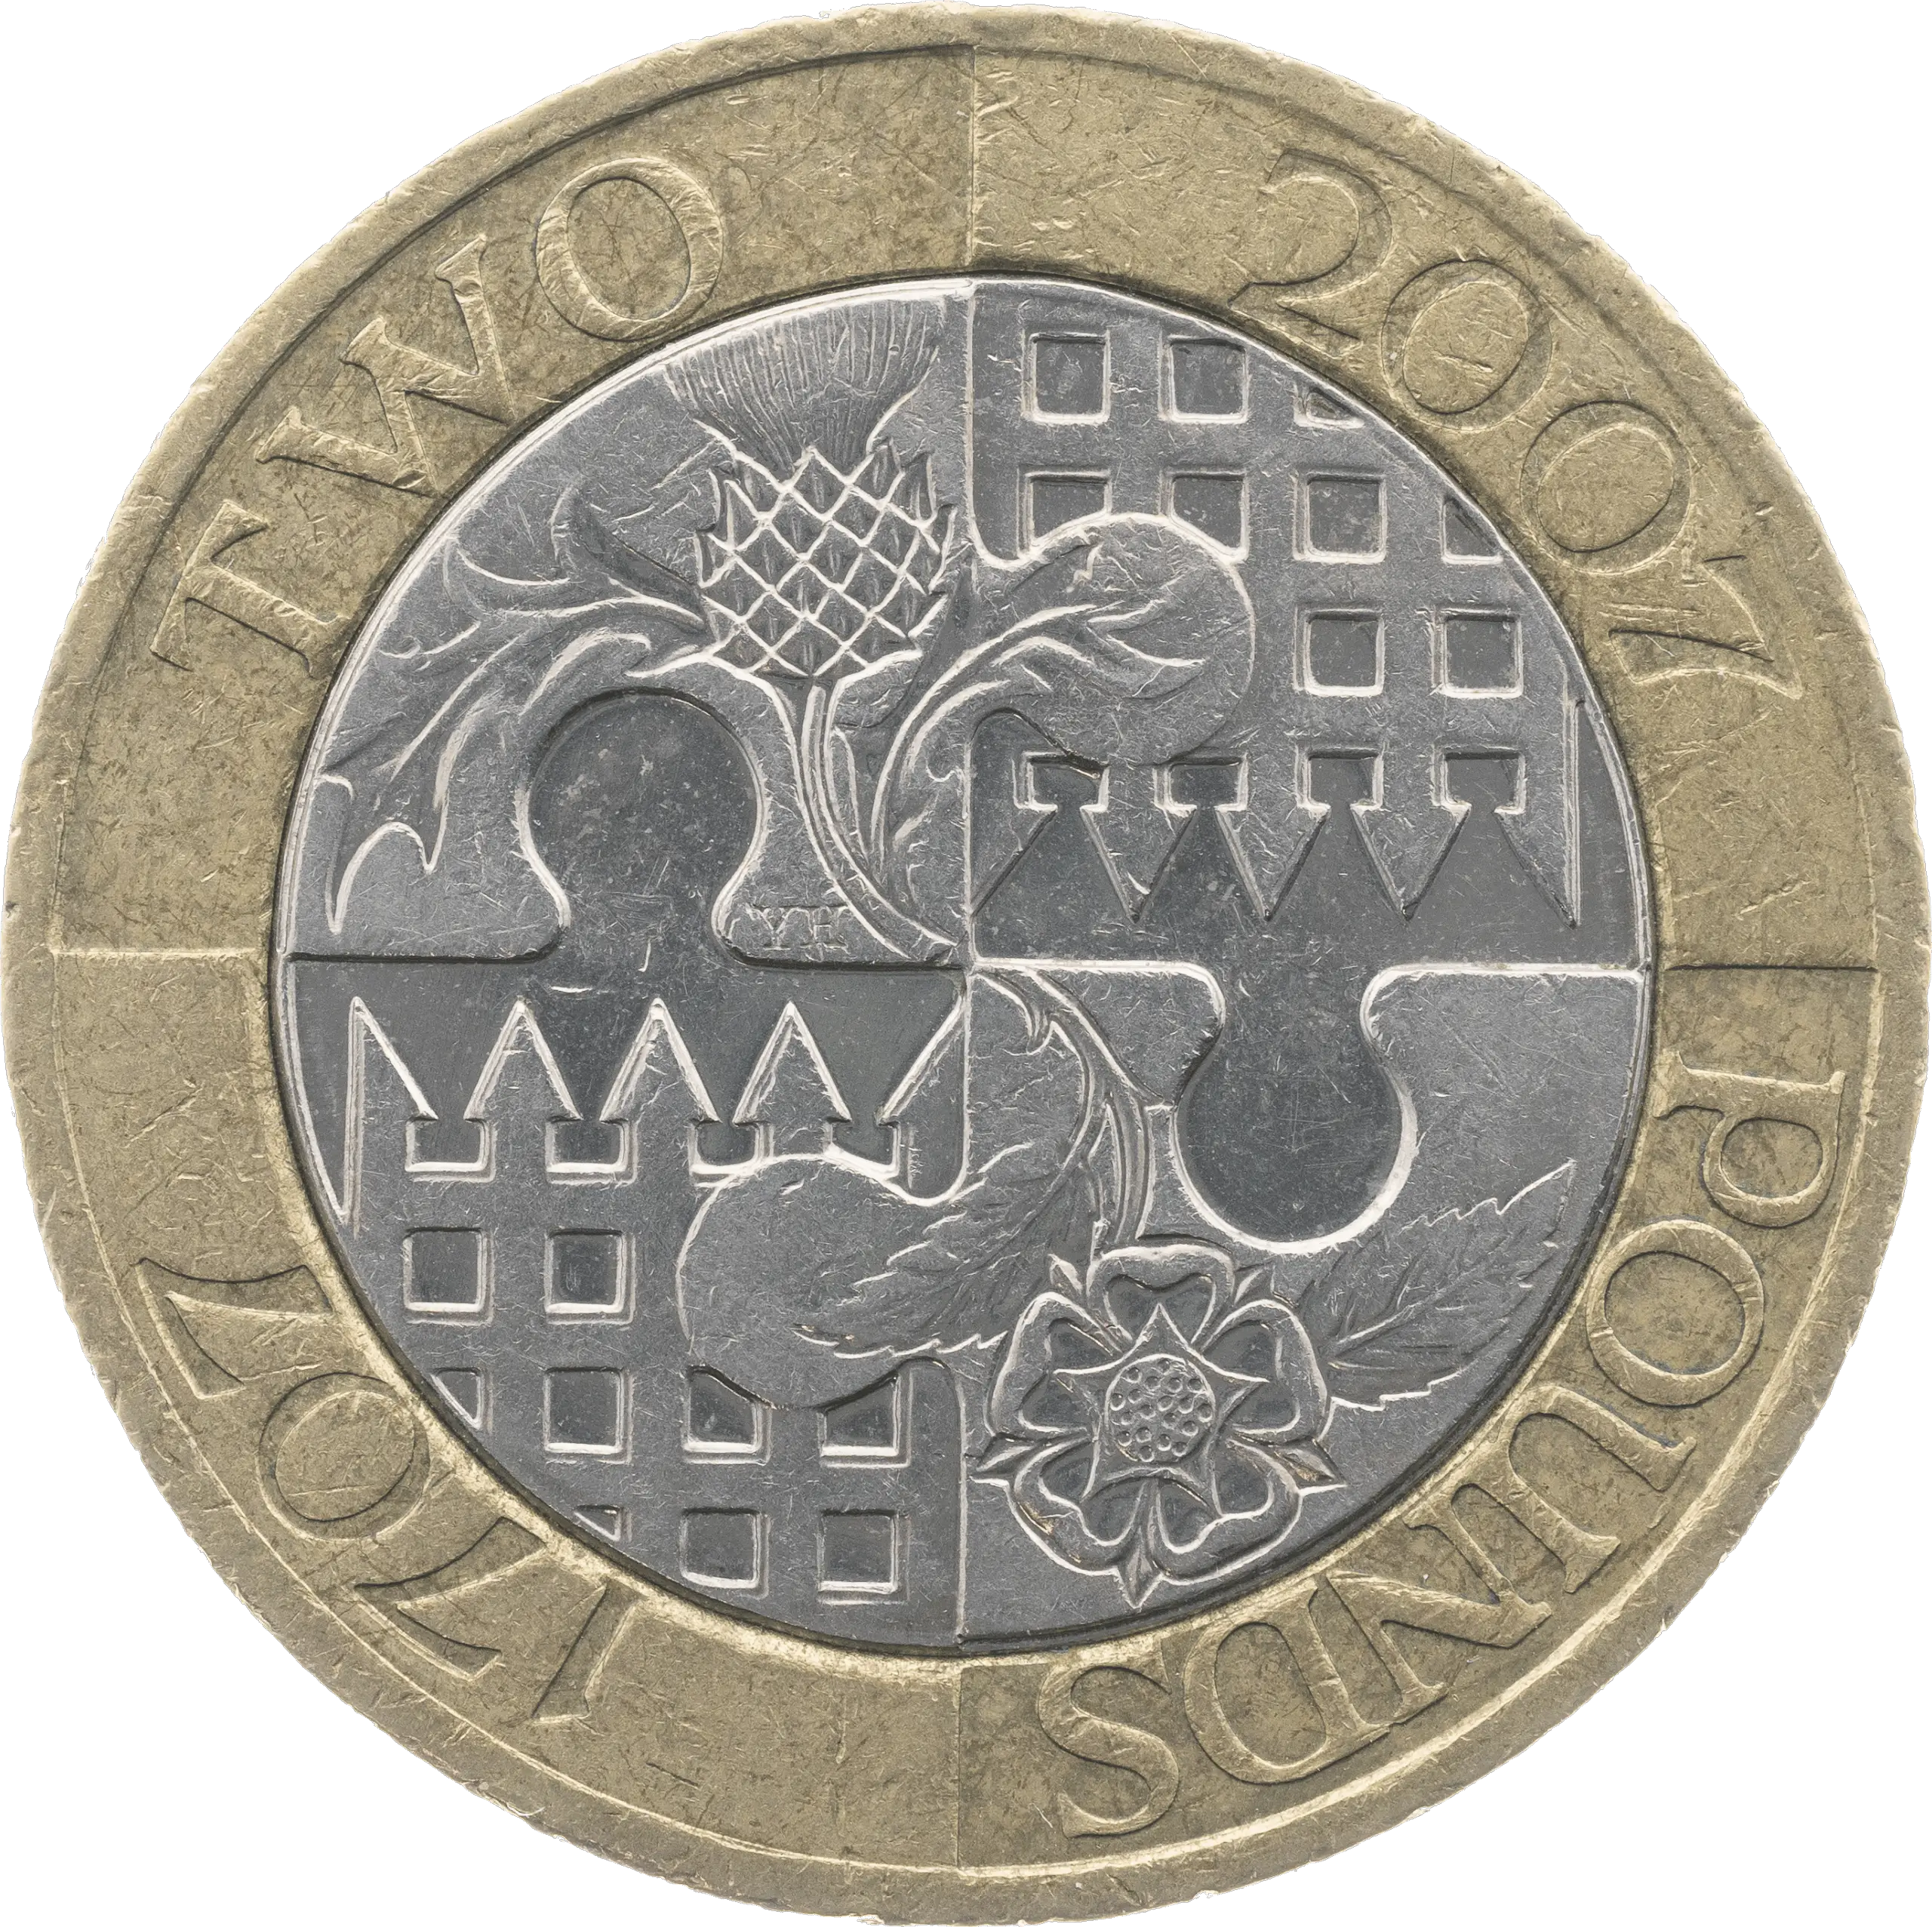 2007 £2 Coin Reverse Design